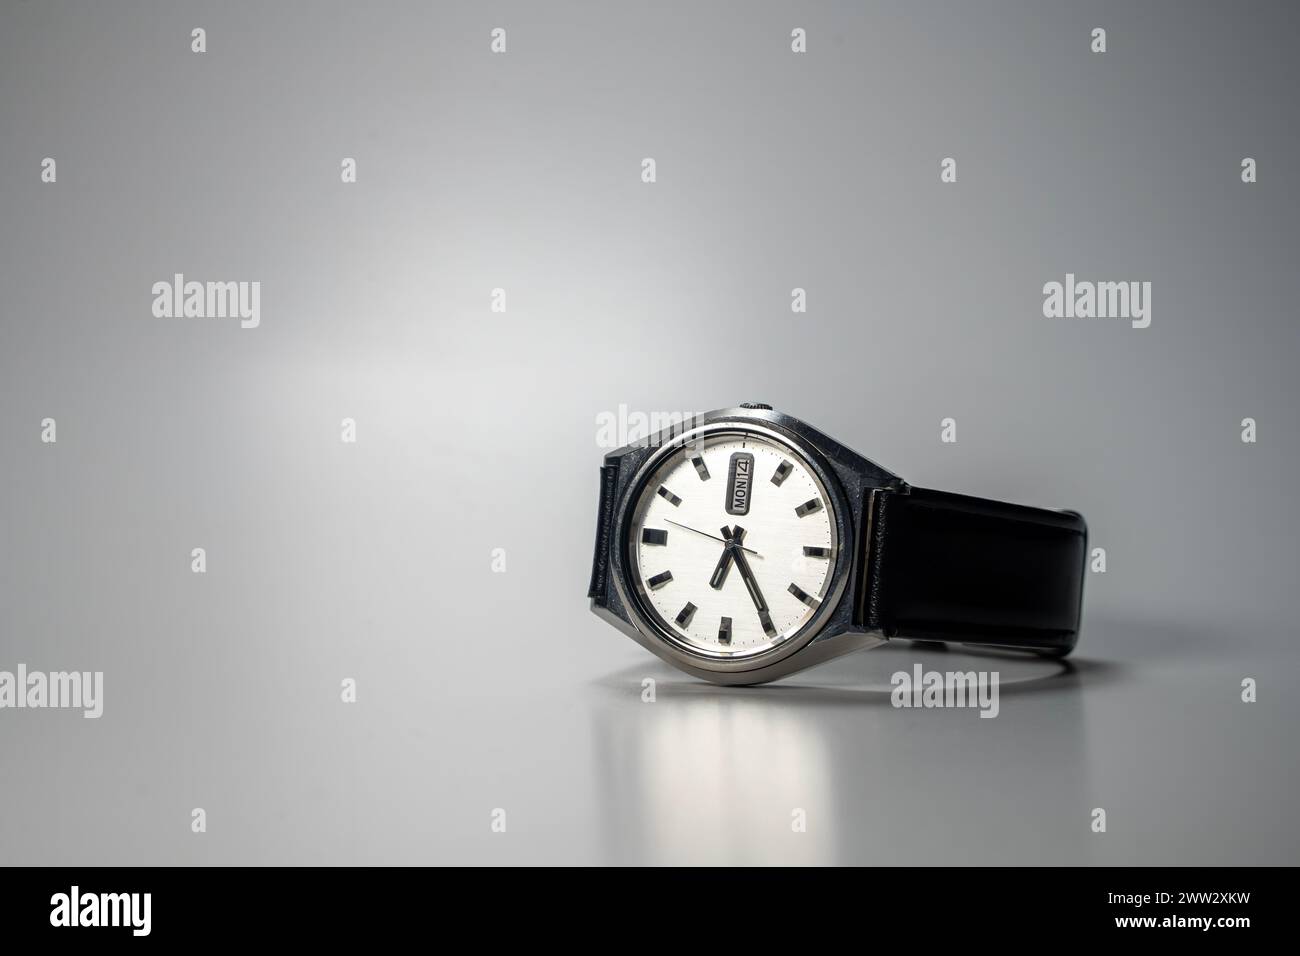 Orologio da polso automatico vintage con cinturino in pelle, posizionato su una superficie grigia Foto Stock